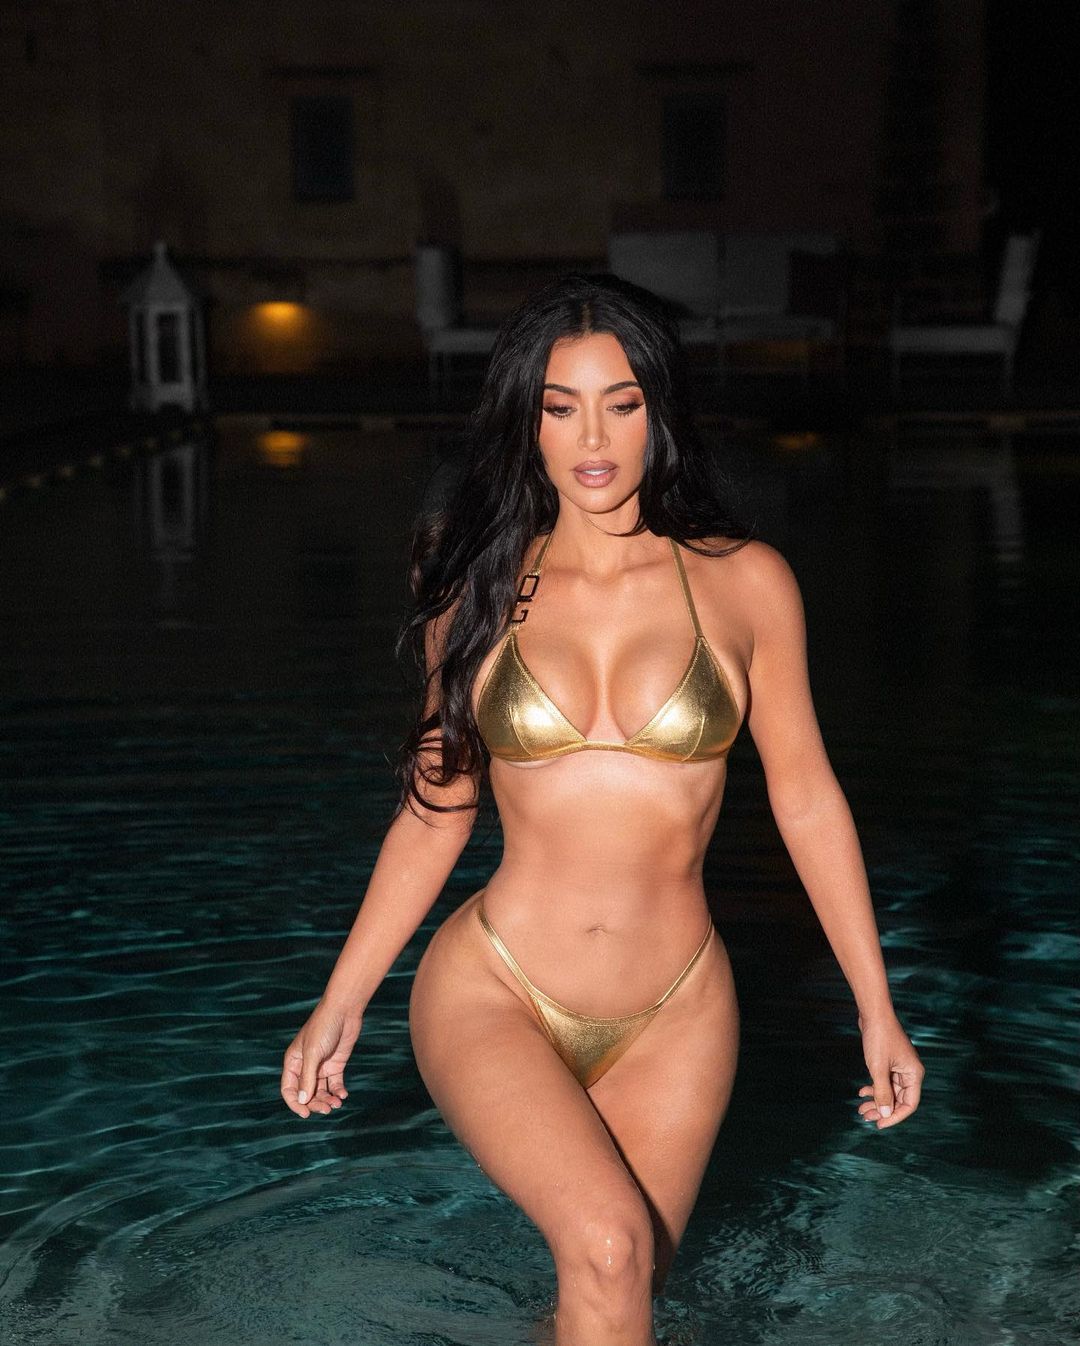 Kim Kardashian’ın altın rengi bikinisiyle verdiği pozlar sosyal medyayı salladı
